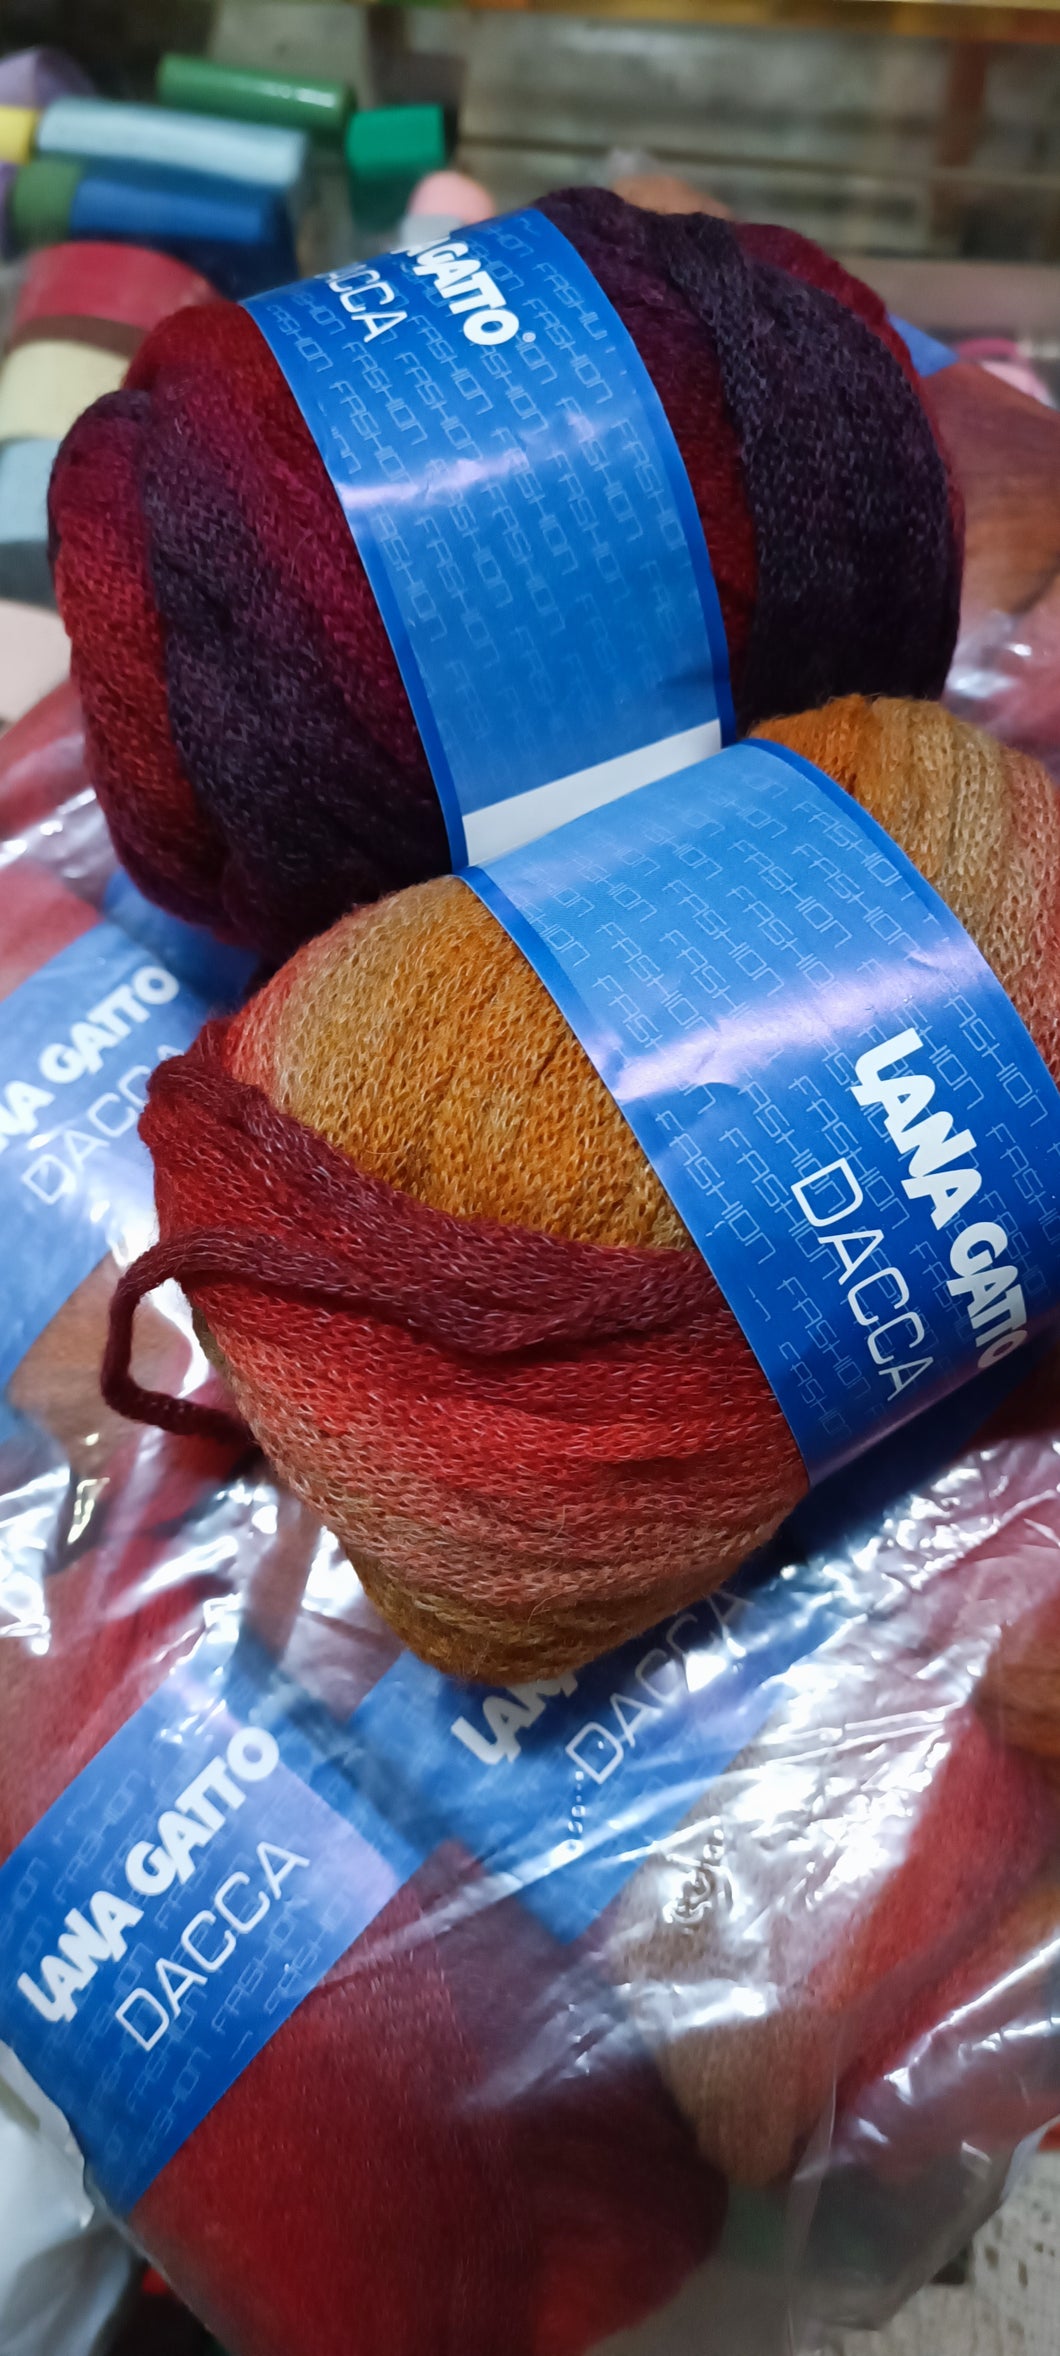 Filato moda Dacca Lana Gatto, misto lana(52%), fantasia arancio(11 gomitoli) e un gomitolo fantasia bordeaux. Ferri 7/8. 600g.